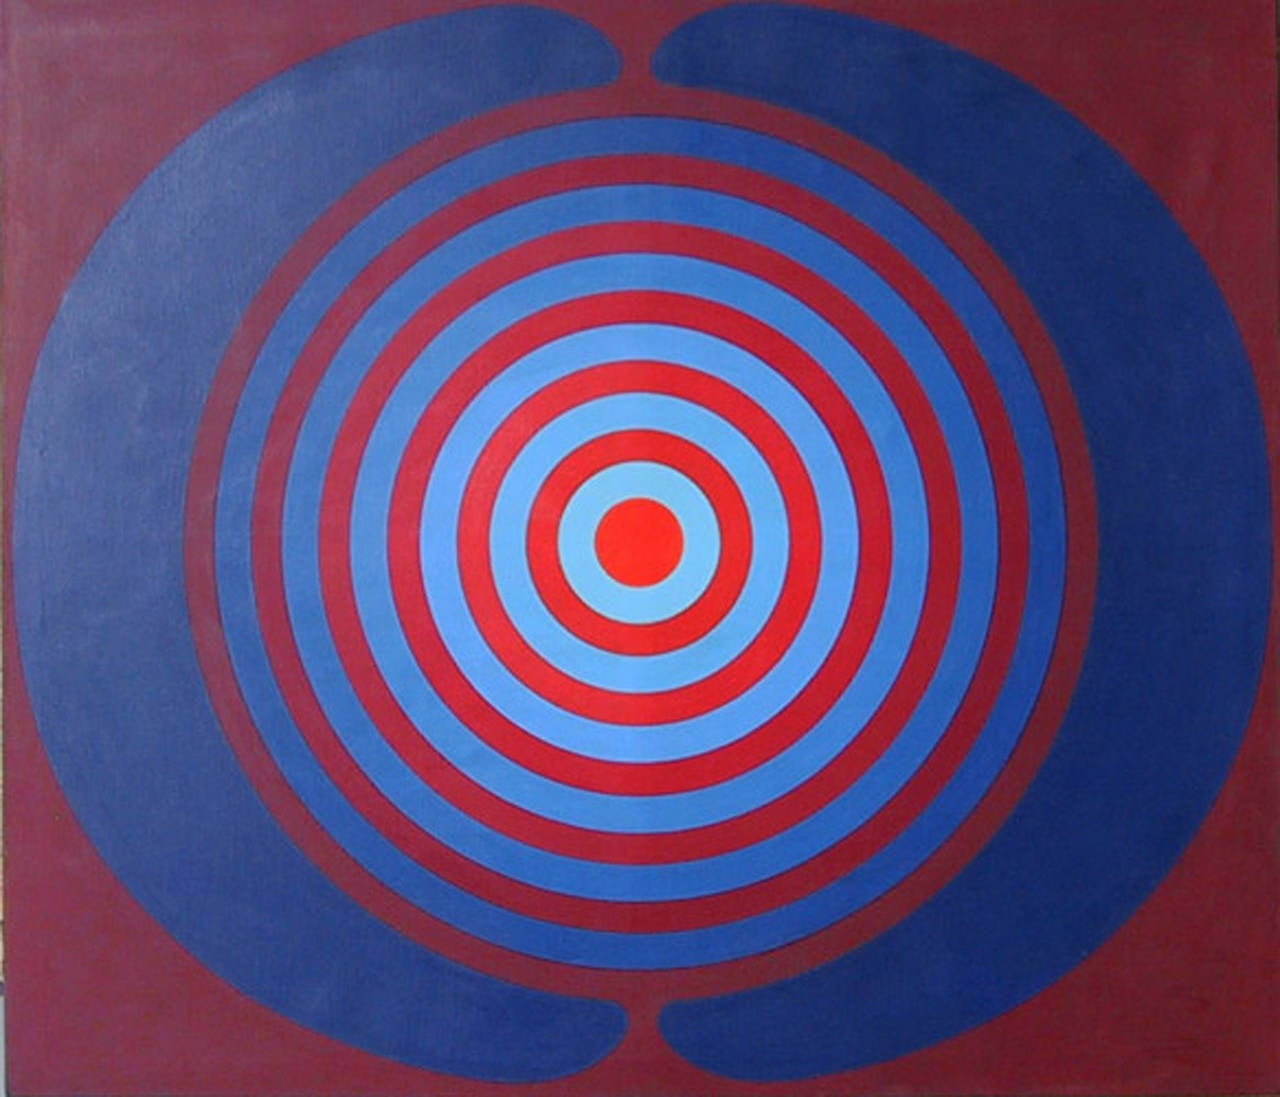 Target, Large Geometric Painting by Kyohei Inukai 1968